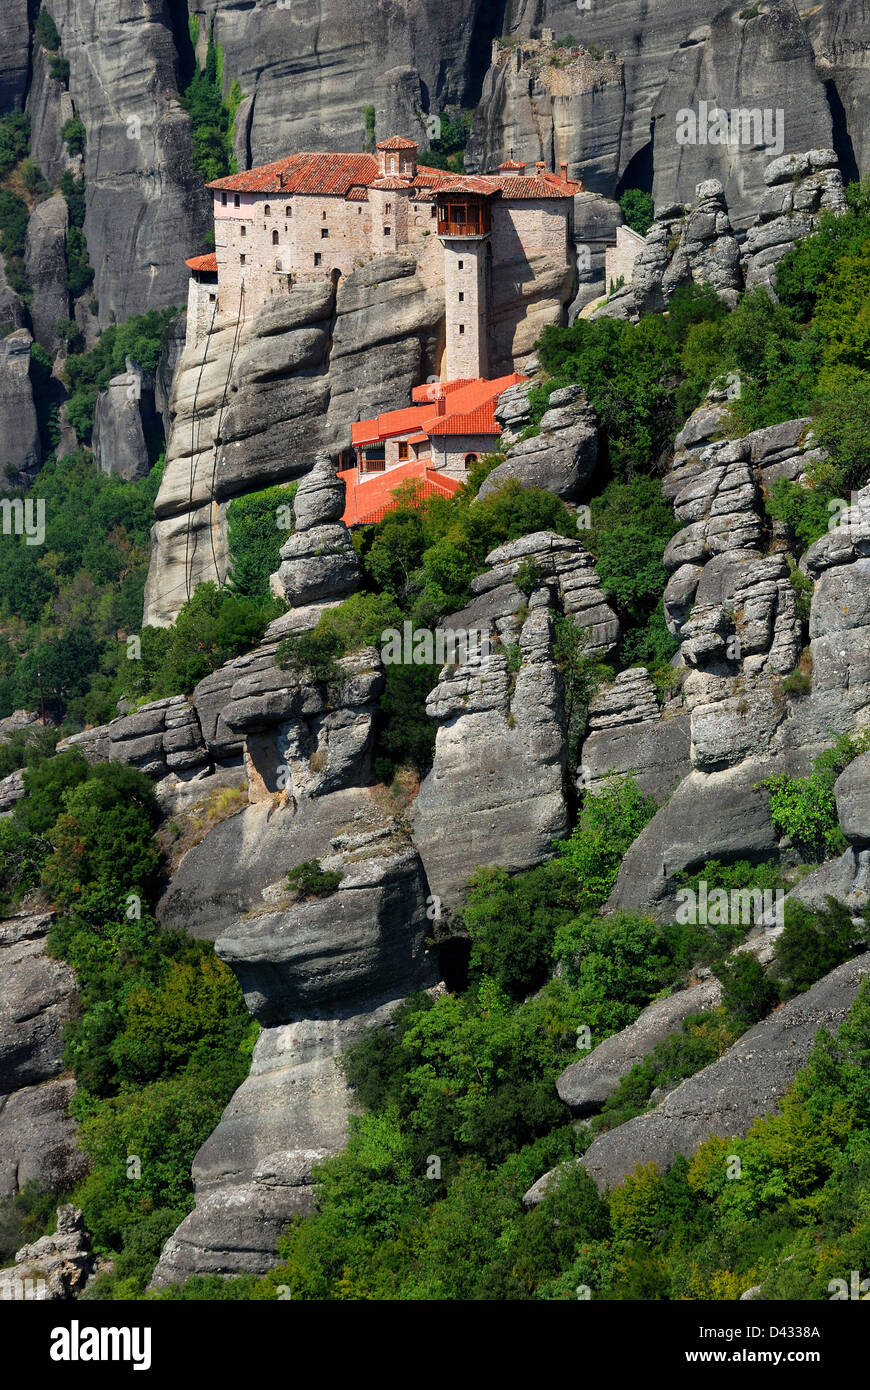 Fondata nel XVI secolo, il facilmente accessibile monastero Rousannou occupa una roccia inferiore rispetto agli altri della meteora. Foto Stock